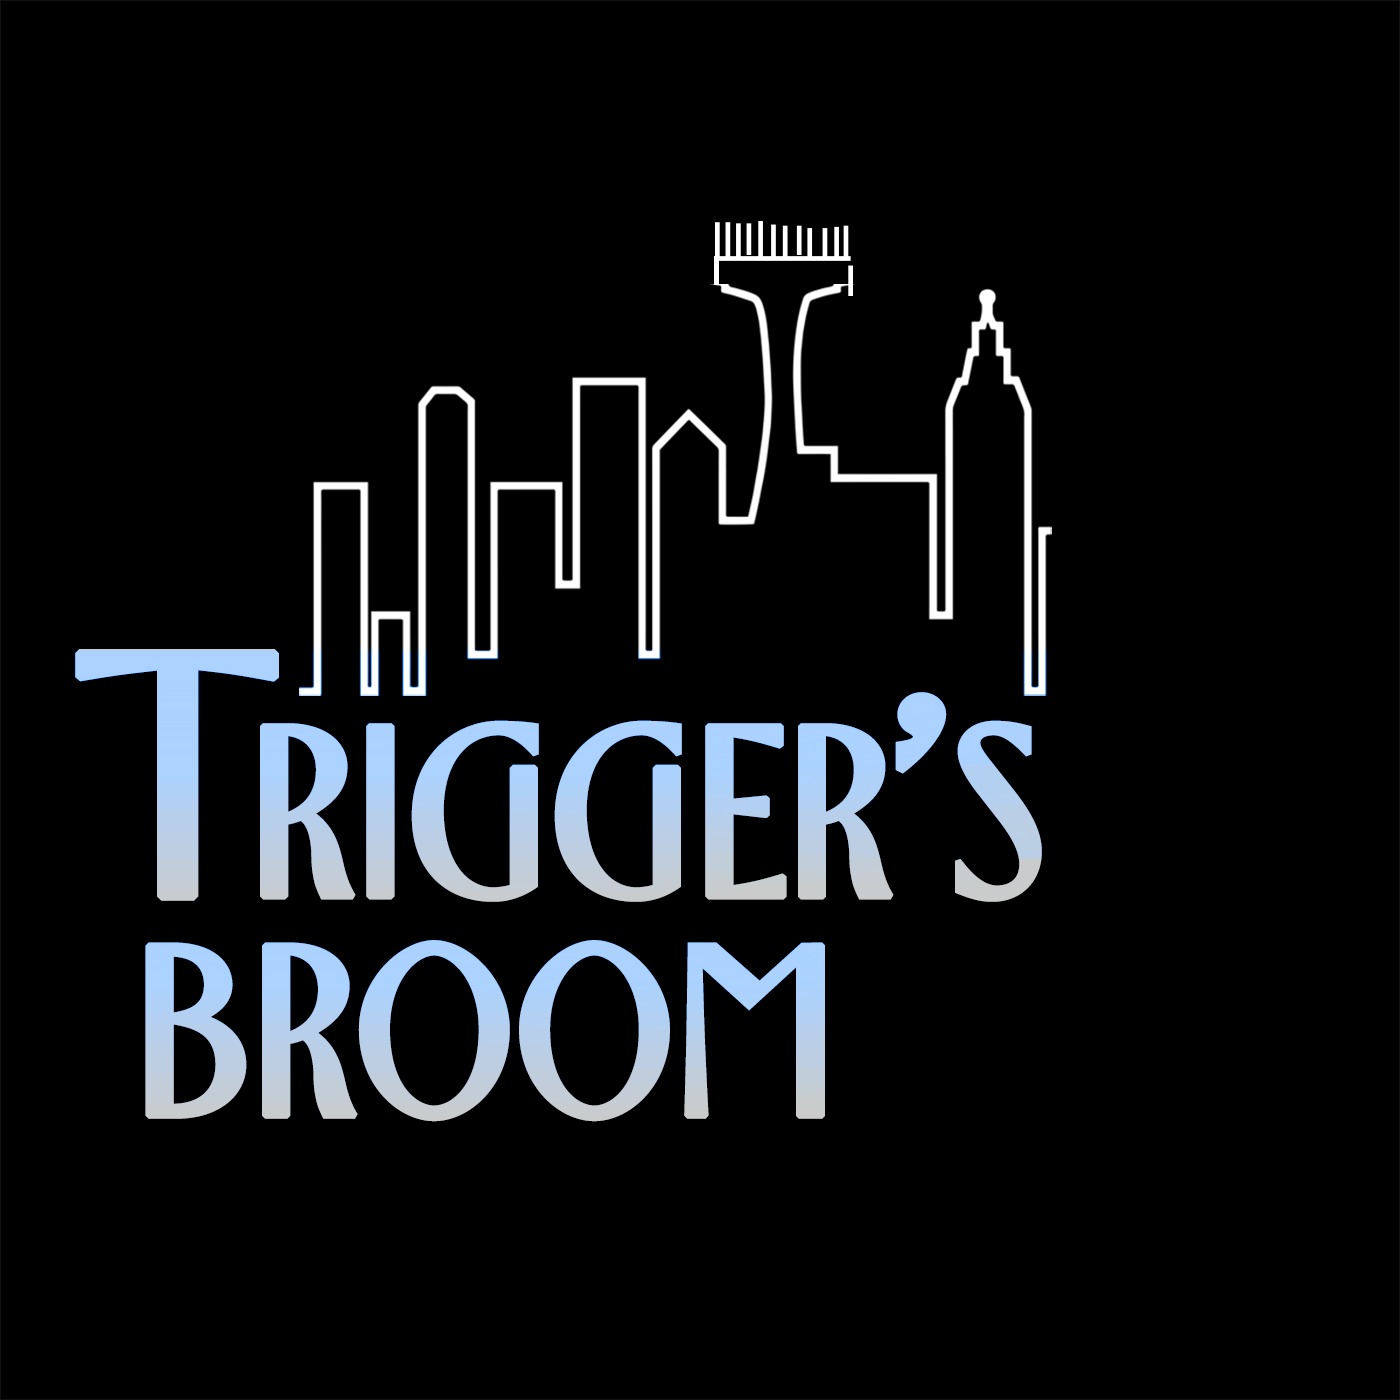 Trigger's Broom